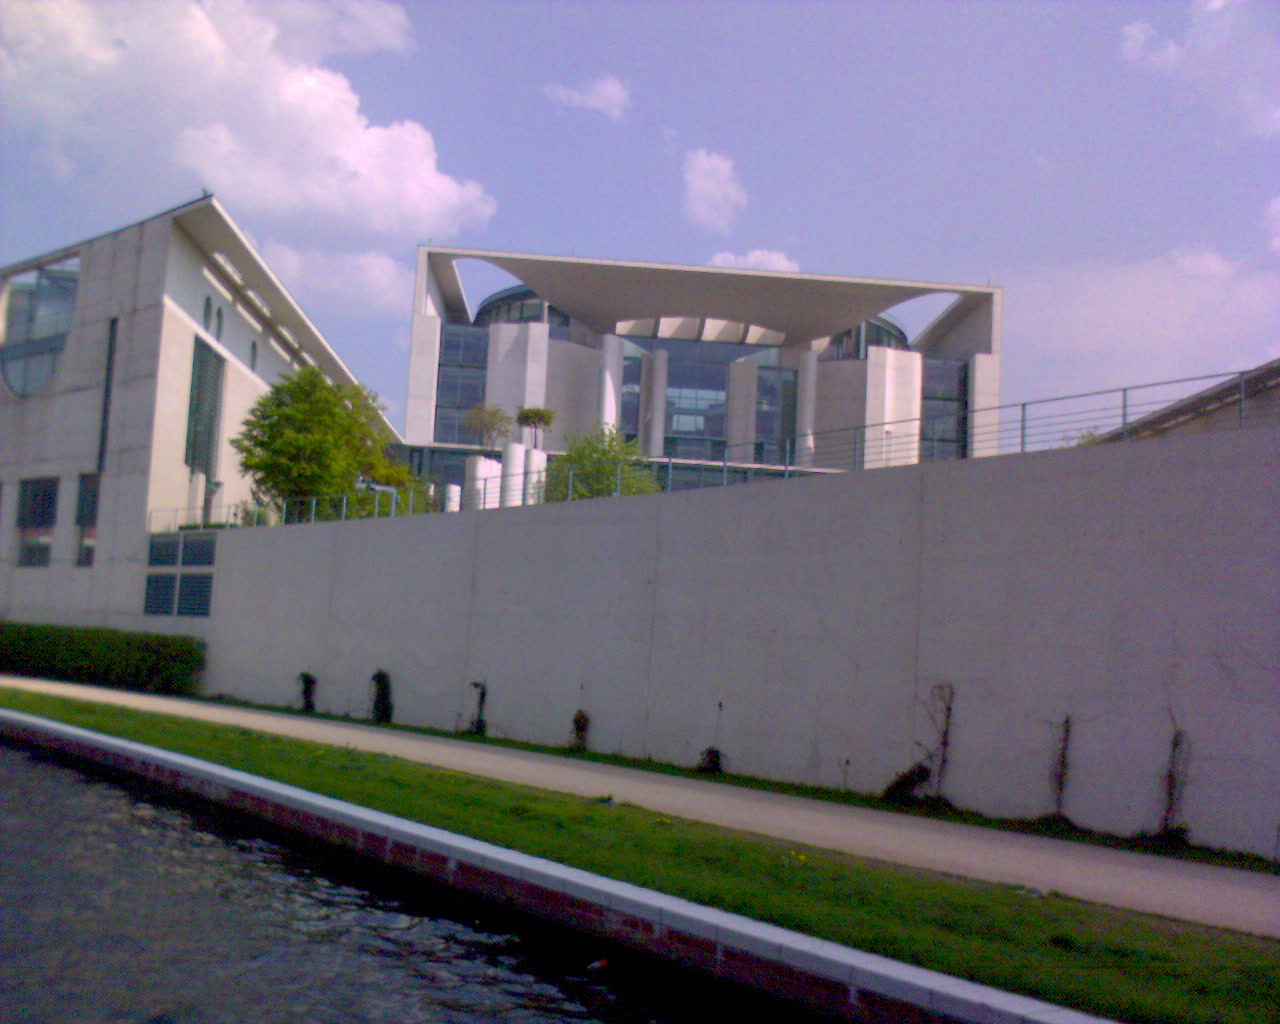 Das Bundeskanzleramt in Berlin ist seit 2001 Sitz des Bundeskanzleramtes der Bundesrepublik Deutschland. Dieses Gebäude wurde während der Amtszeit von Kanzler Helmut Kohl (1982–1998) von den Berliner Architekten Axel Schultes und Charlotte Frank entworfen.